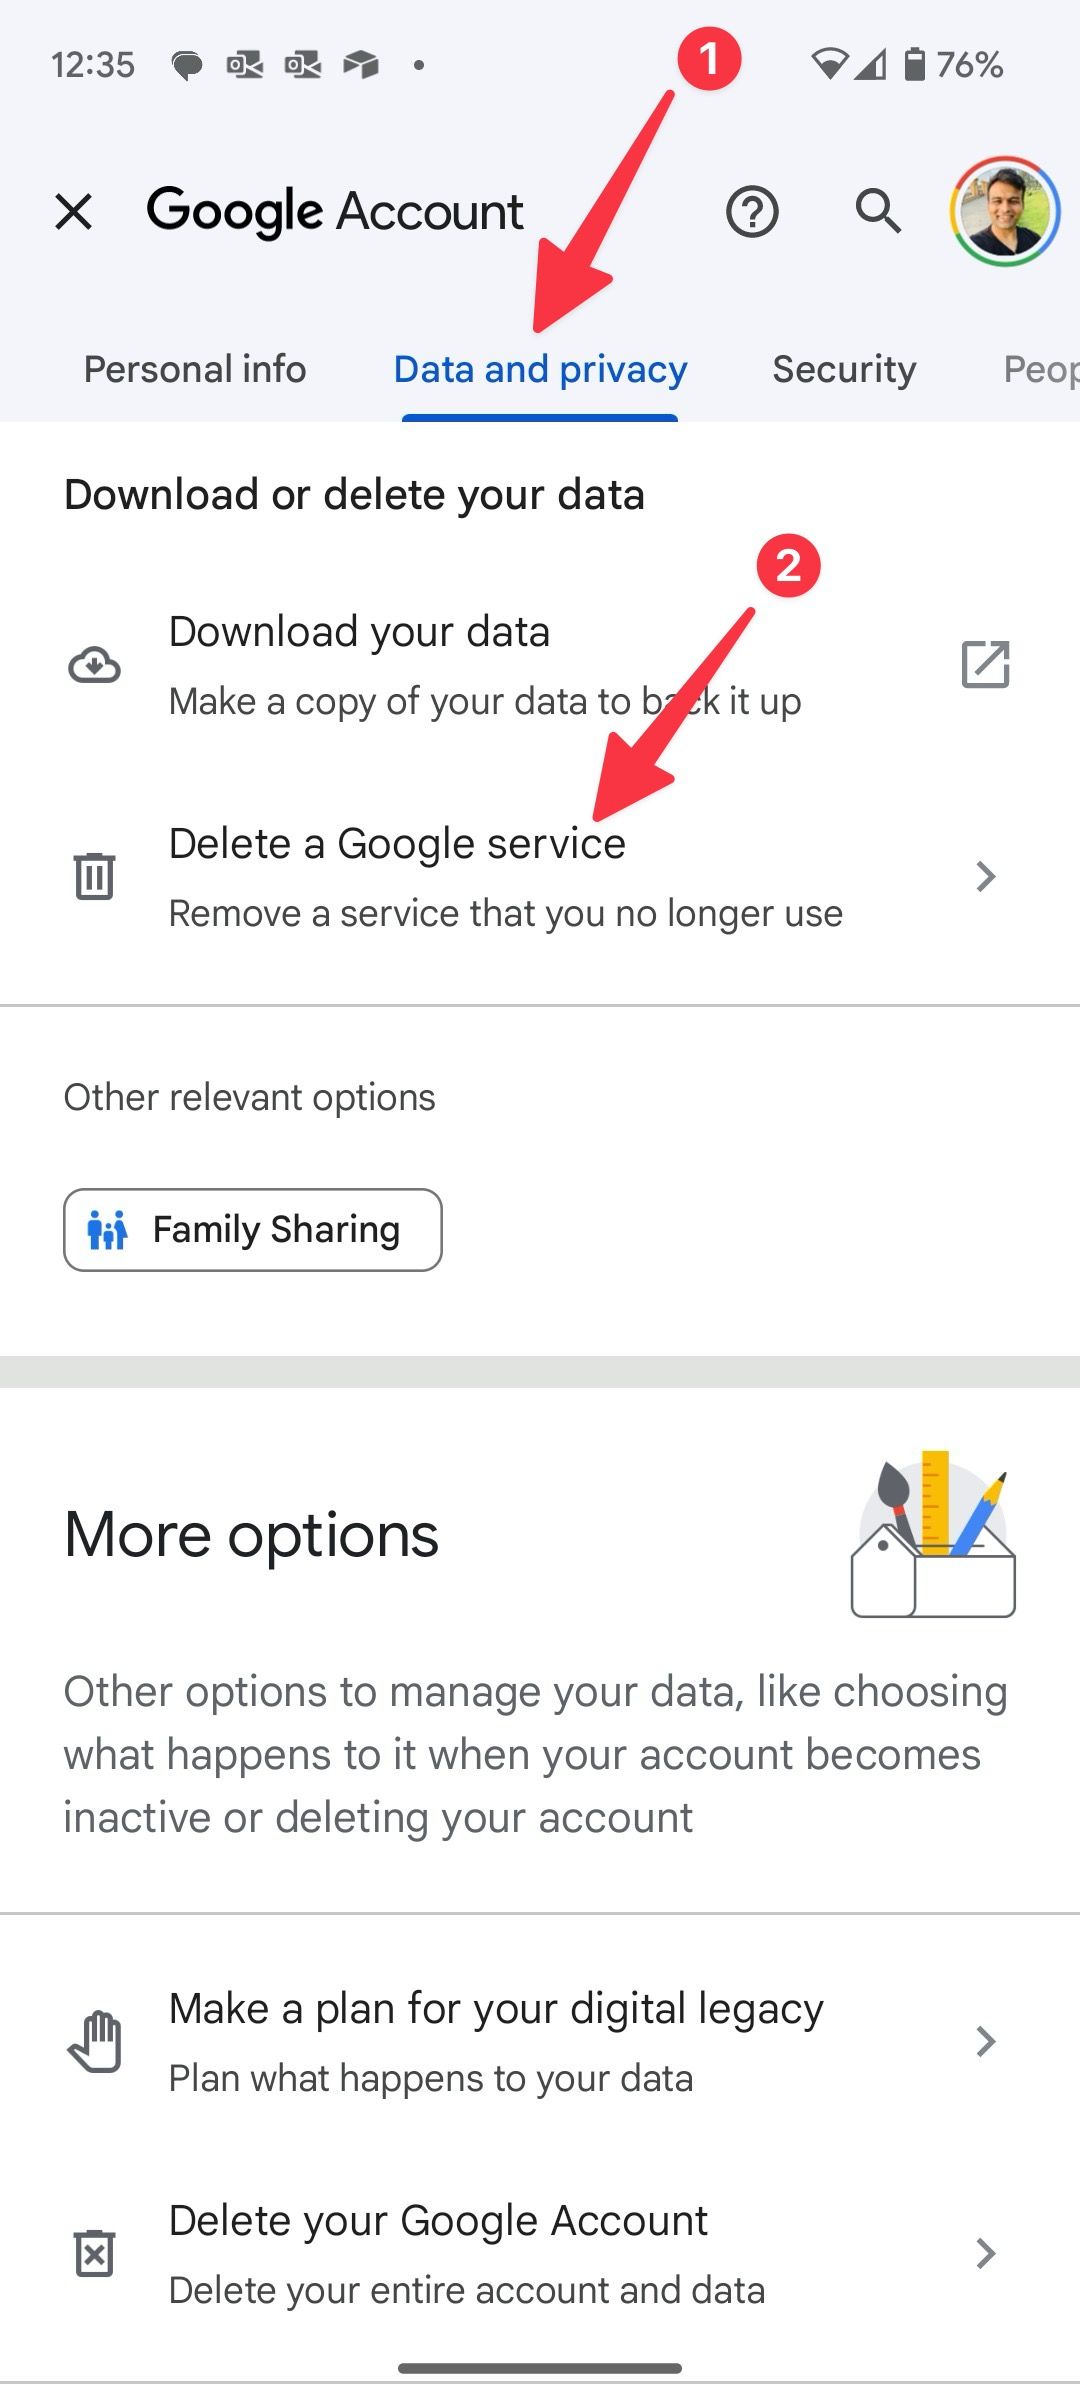 delete a google service on mobile